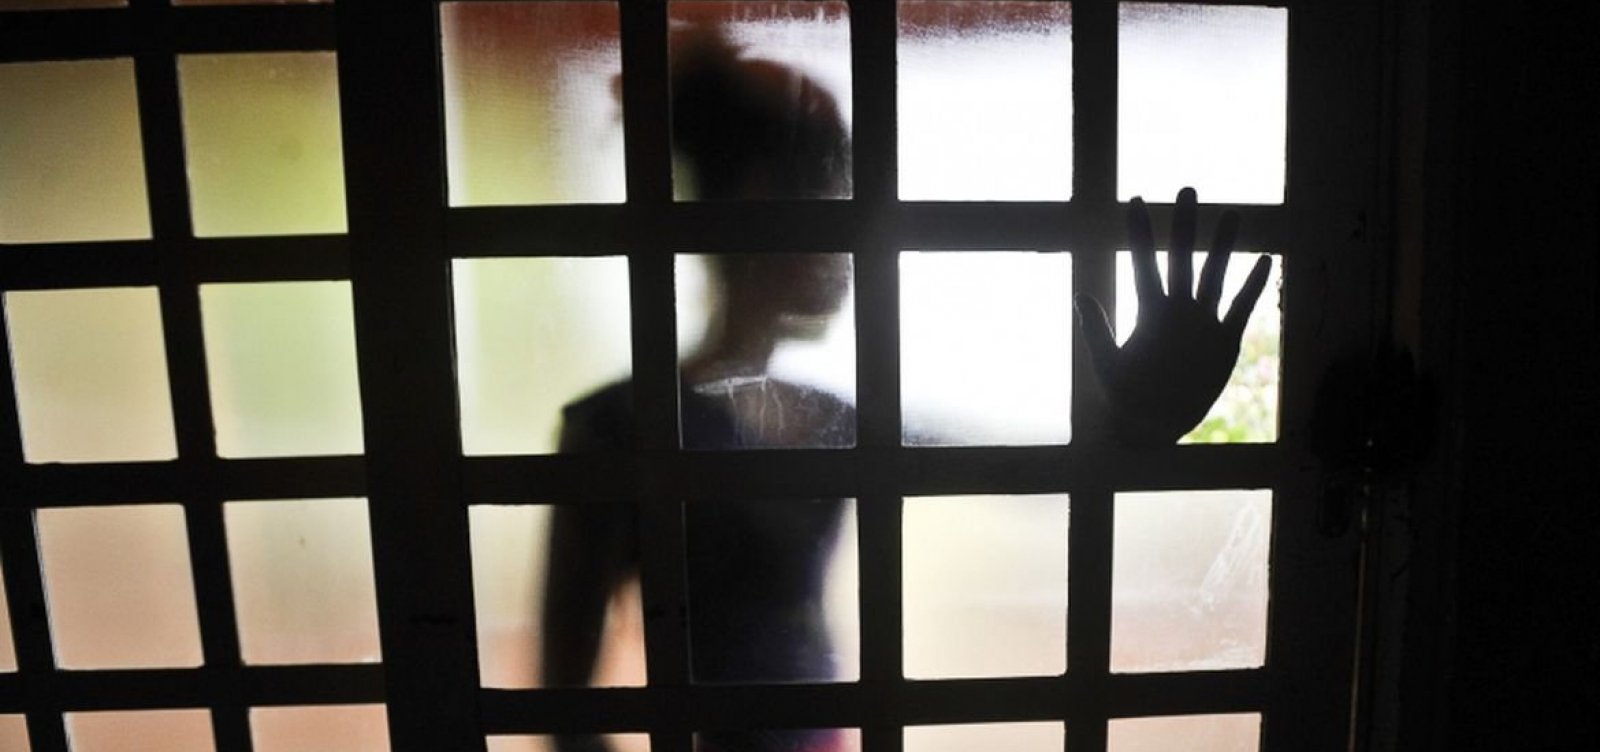 Subúrbio Ferroviário e Valéria lideram casos de abusos sexuais infanto-juvenil em Salvador